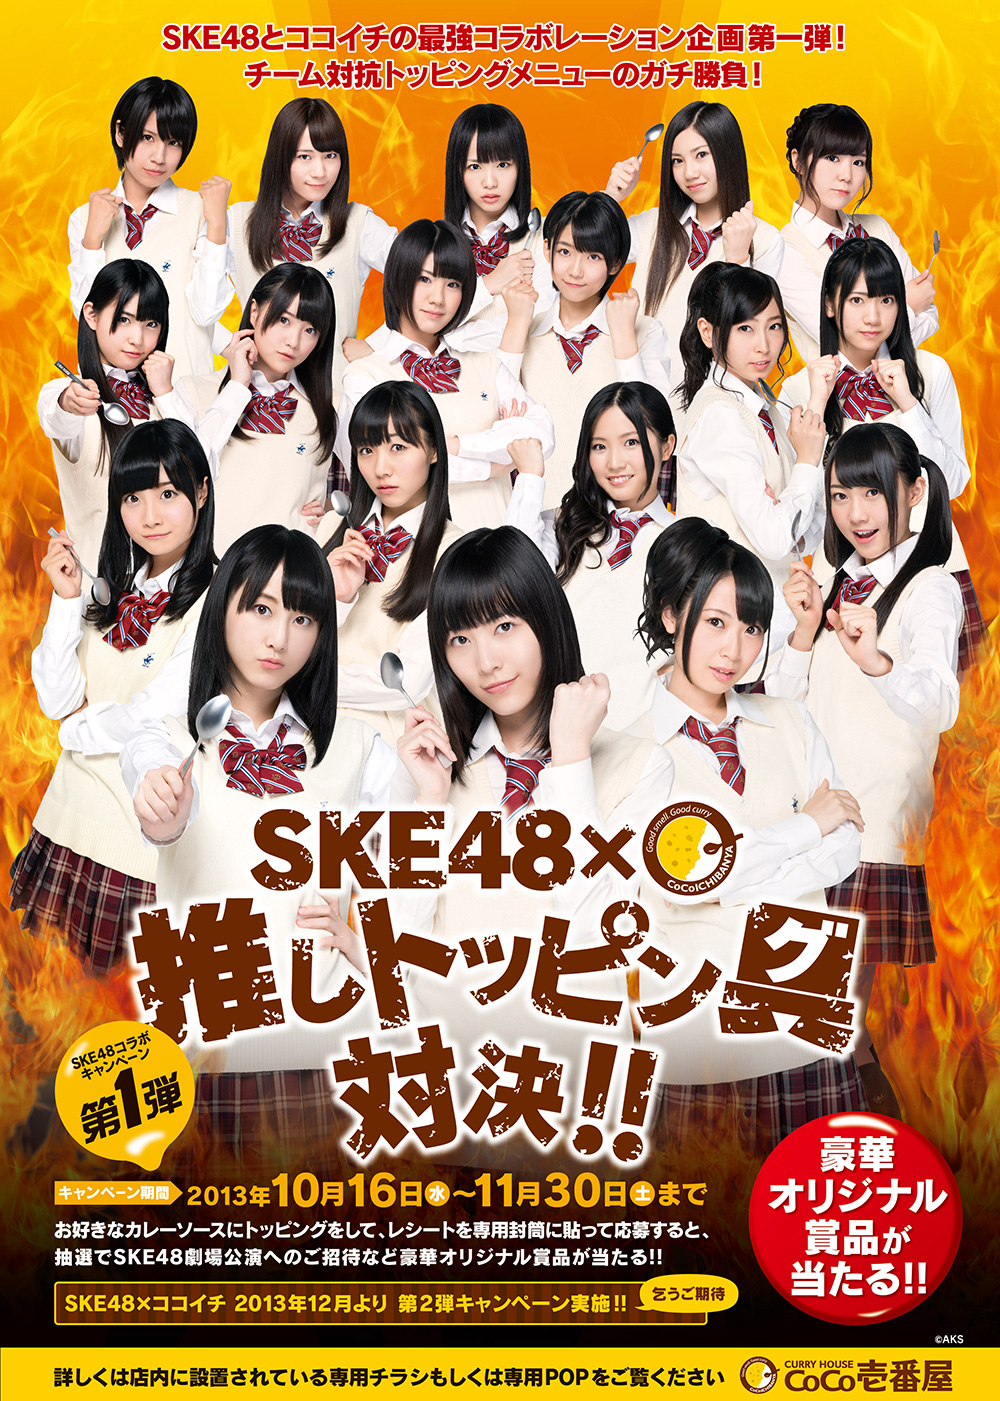 CoCo壱番屋 × SKE48「推しトッピン具対決!!」キャンペーンのイメージ 0